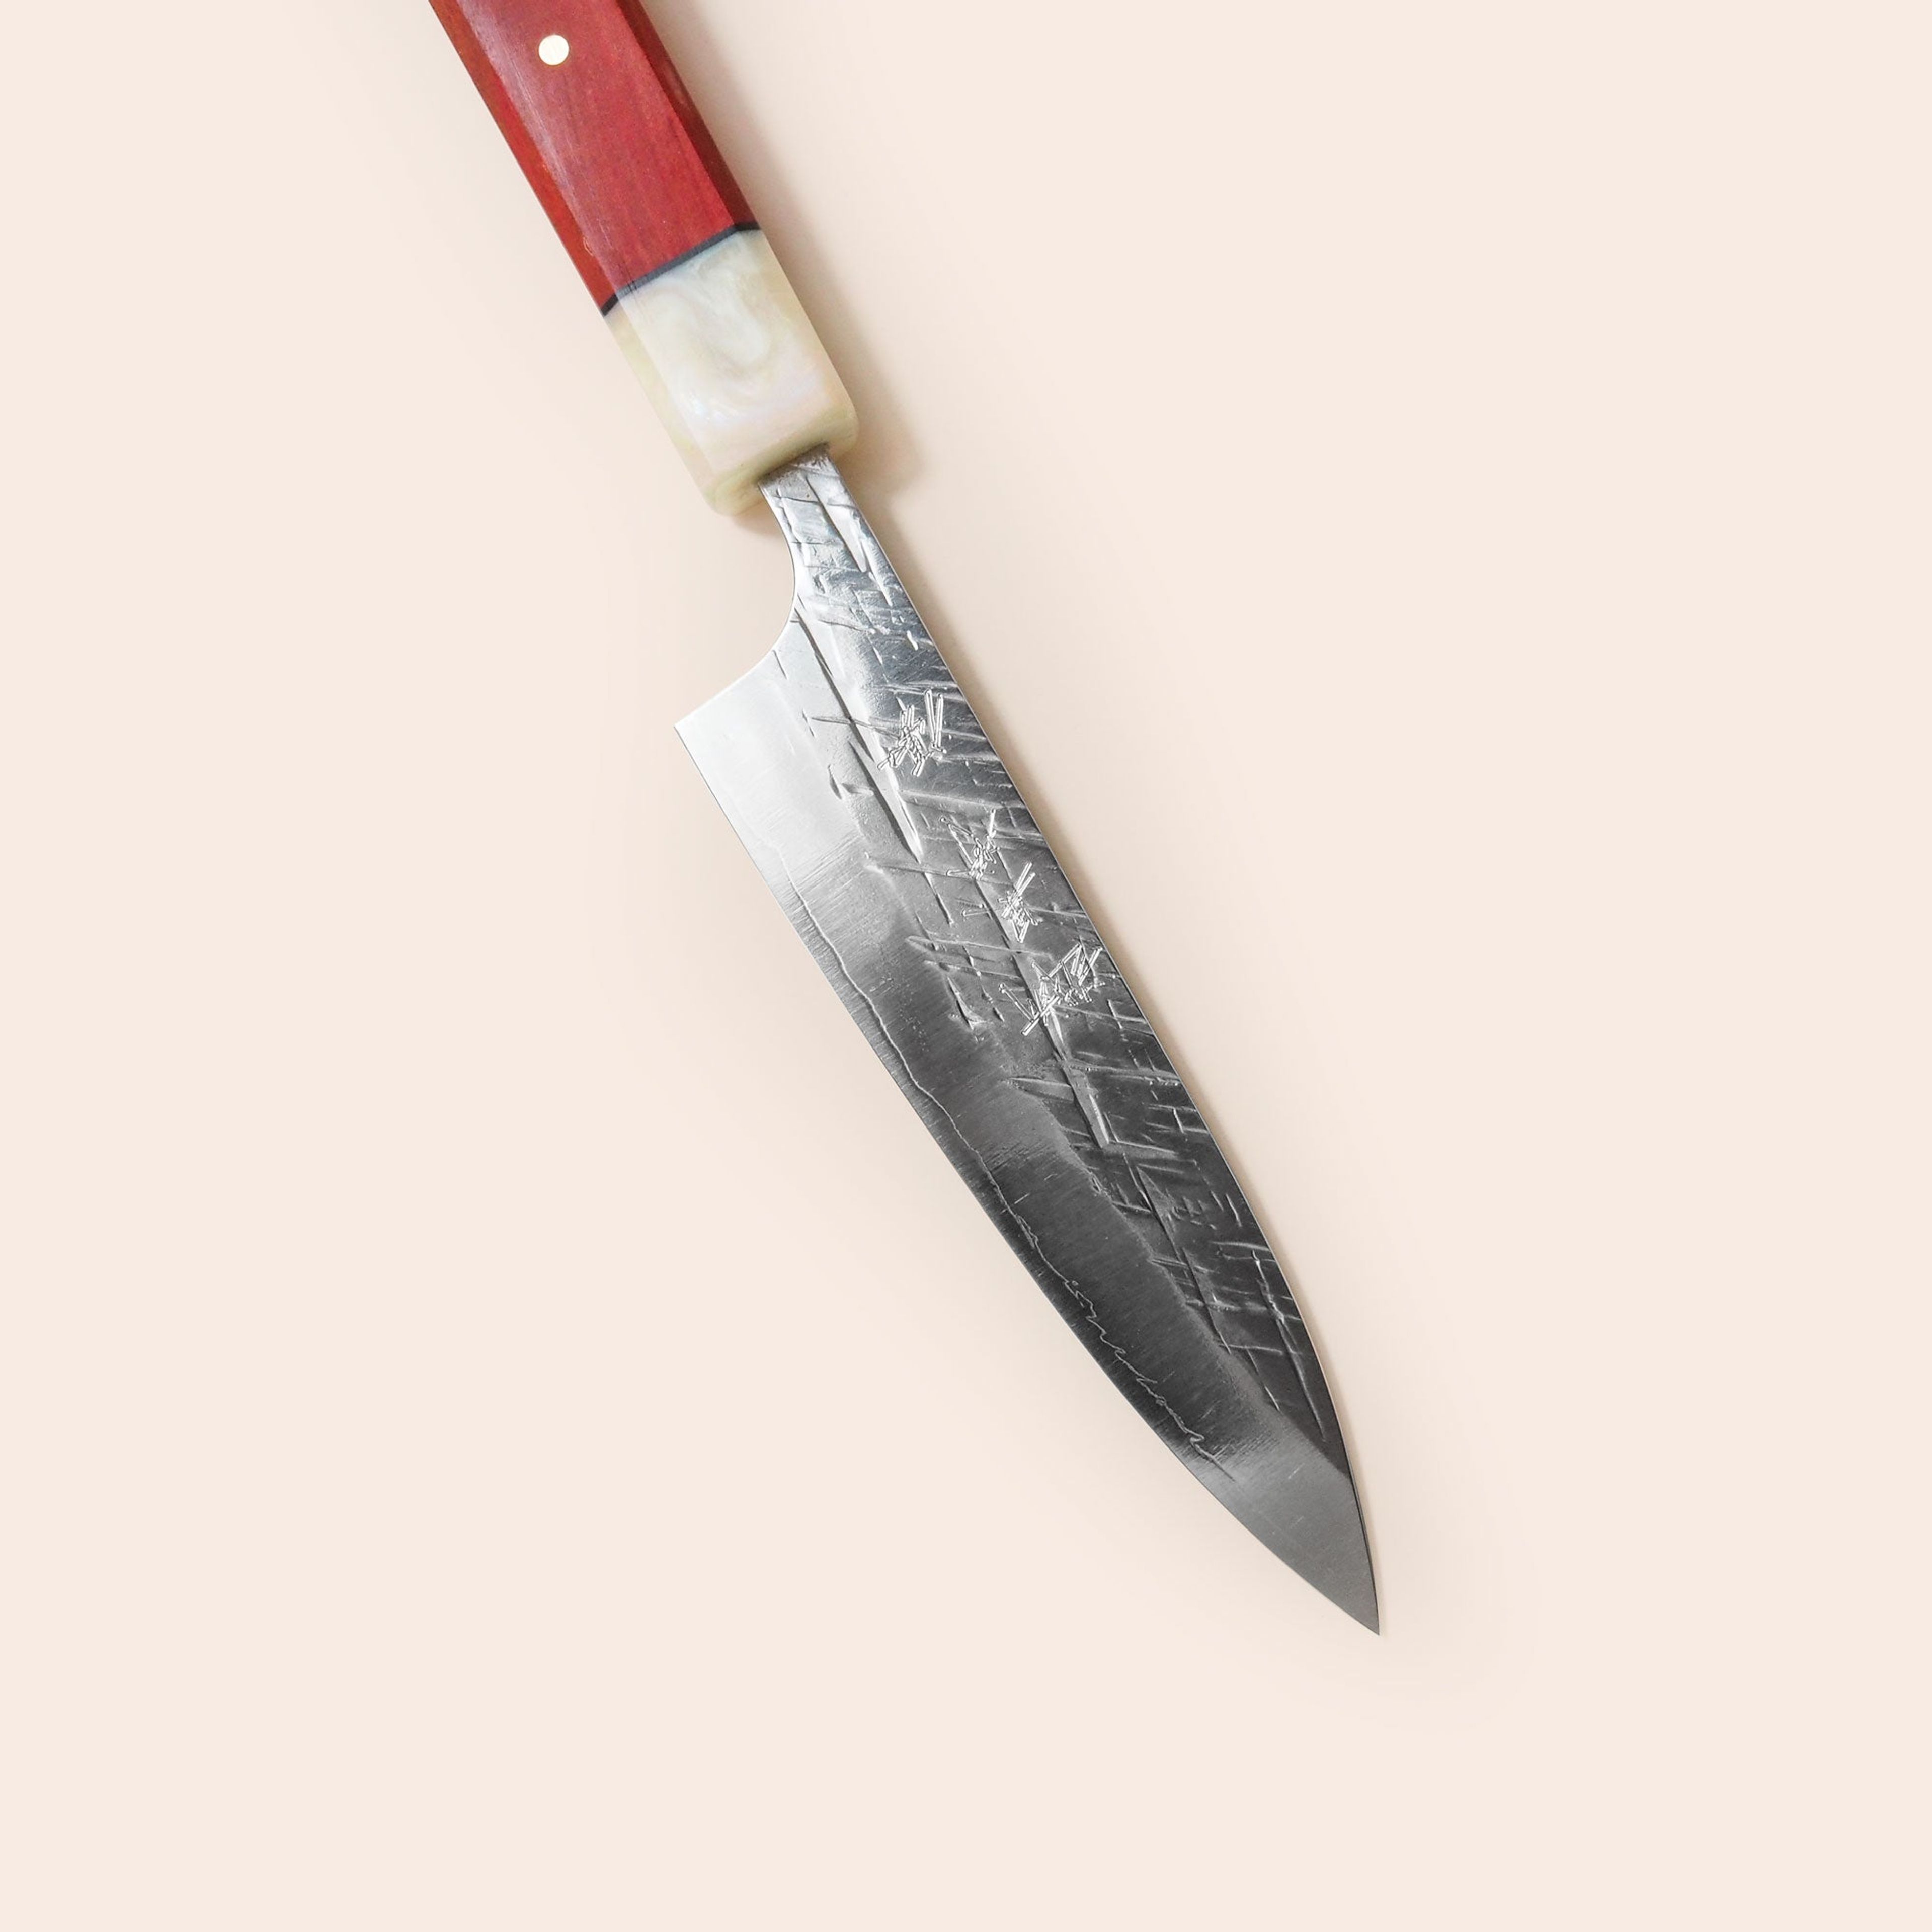 Yu Kurosaki - Japanese Petty - Small Kitchen Paring Knife